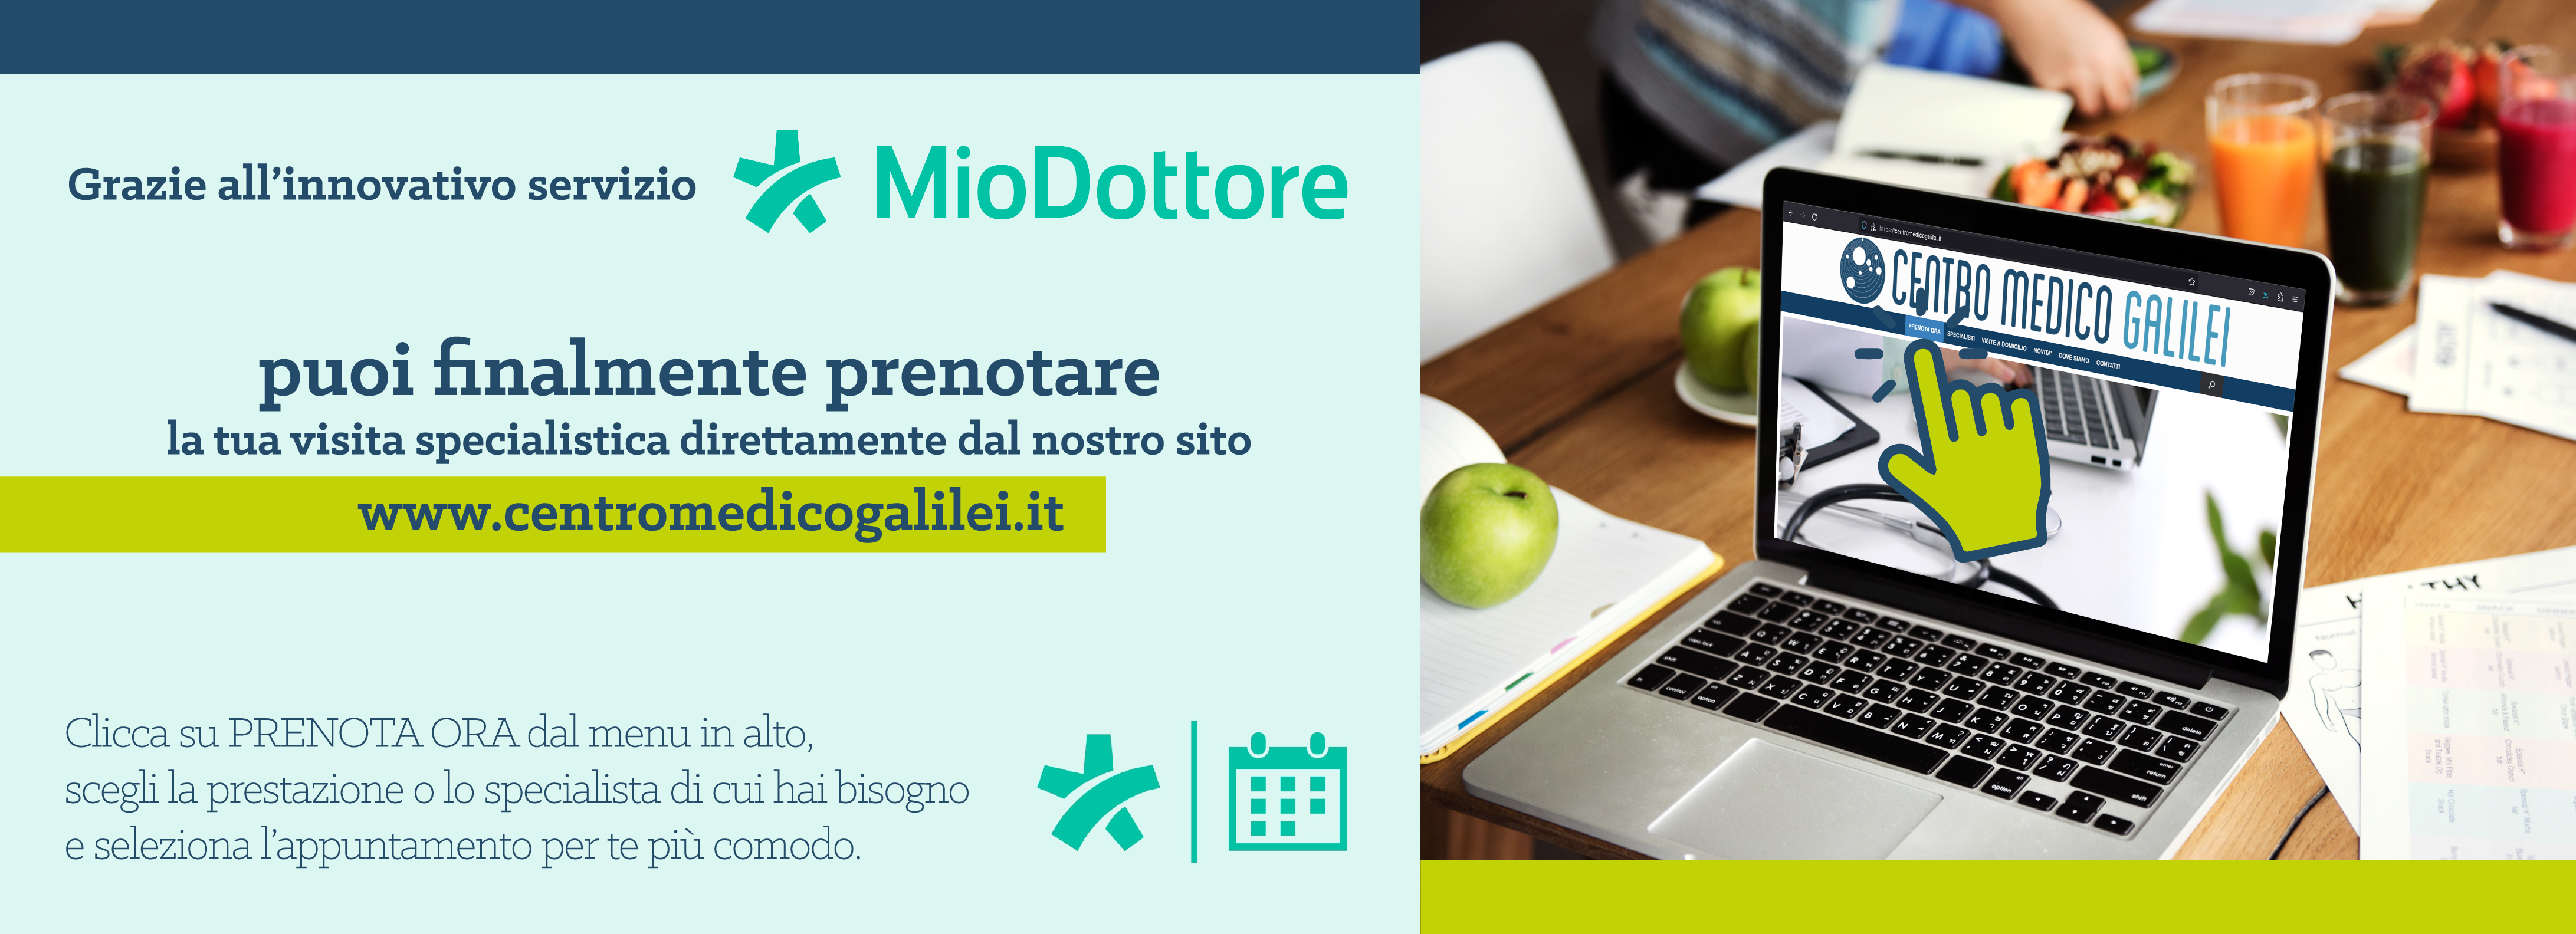 Prenota online su Miodottore.it